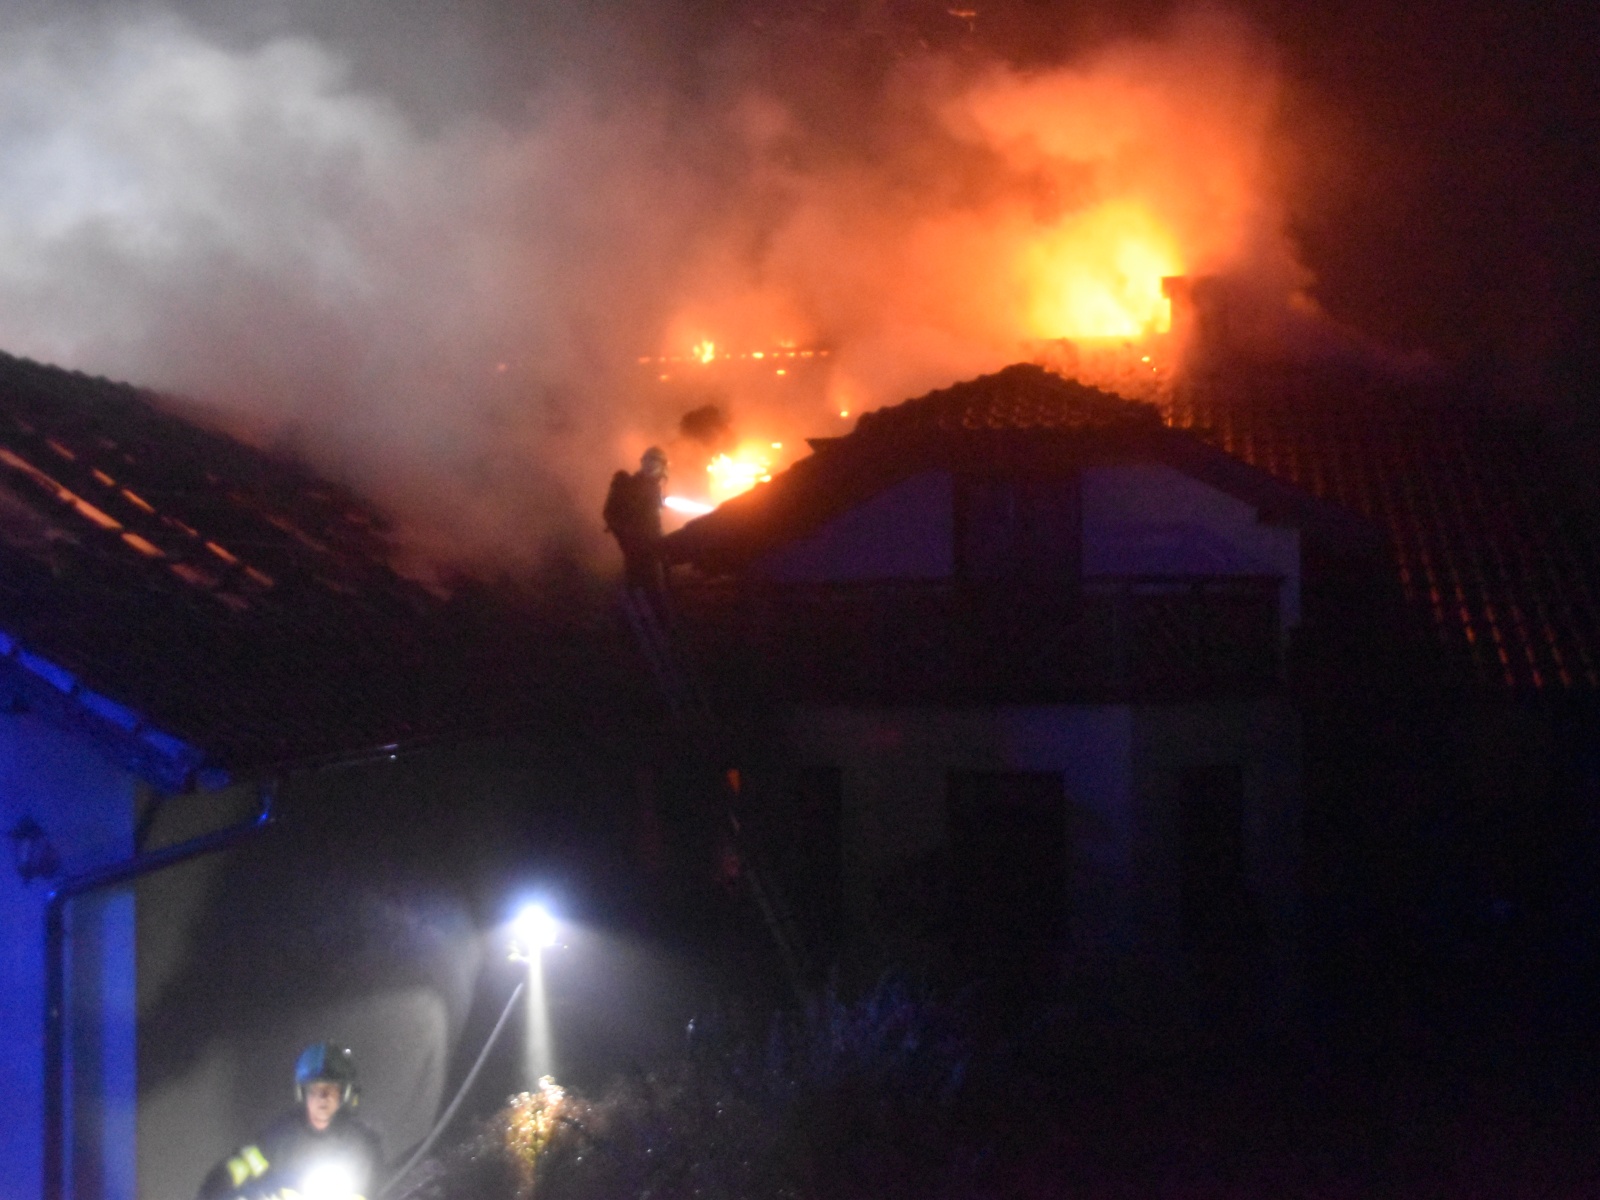 003 - požár střechy rodinného domu.JPG